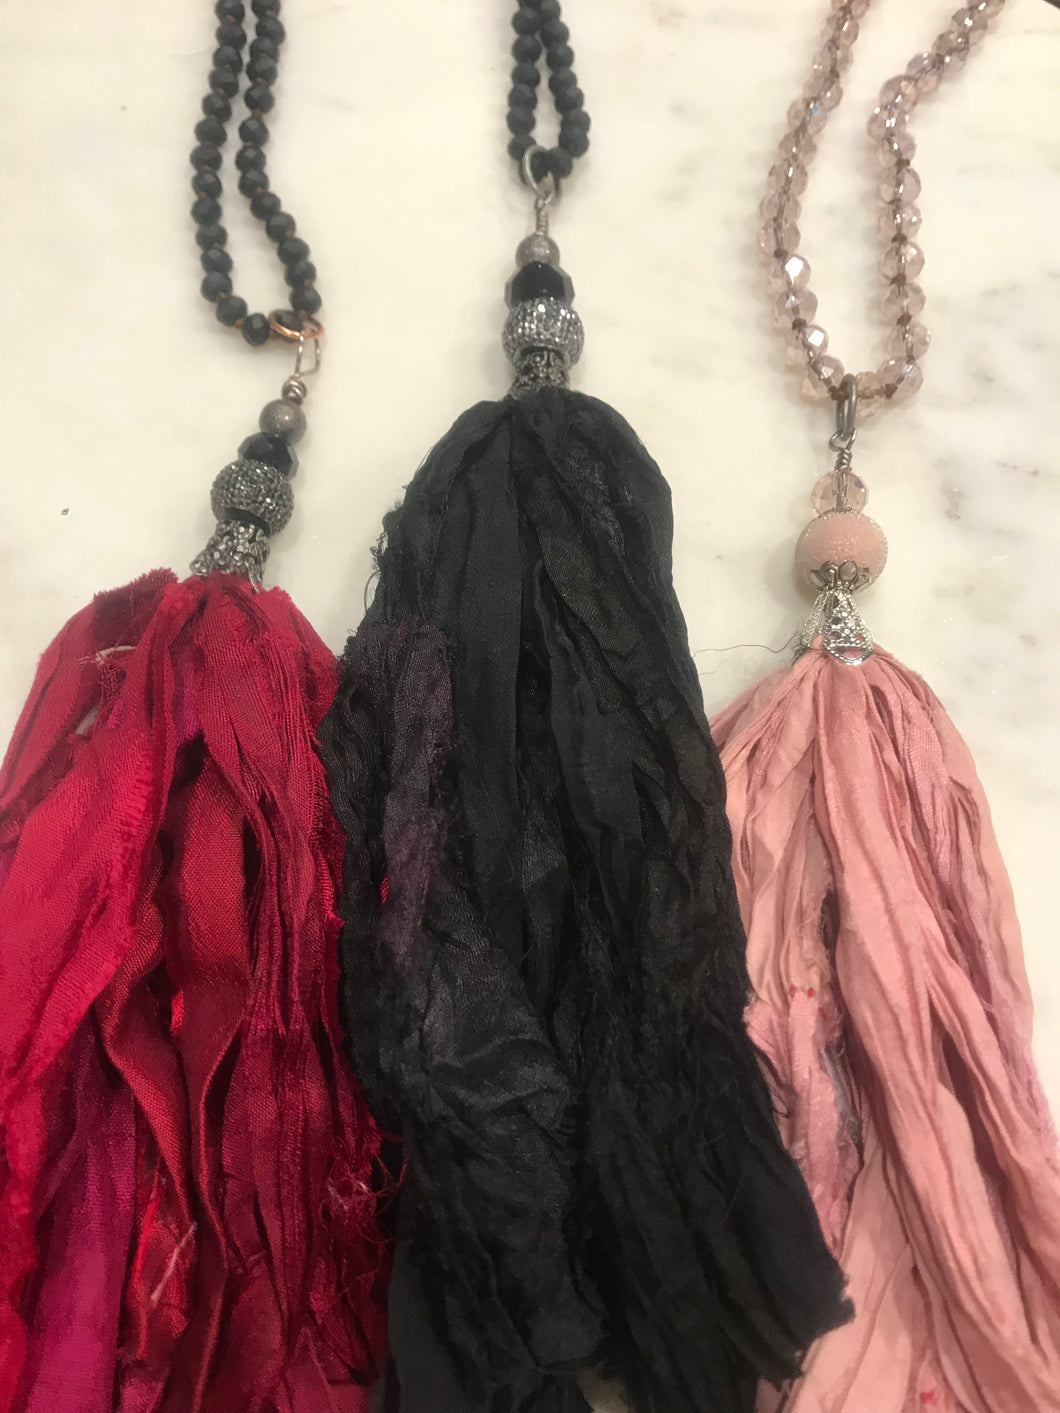 Silk sari tassel necklaces